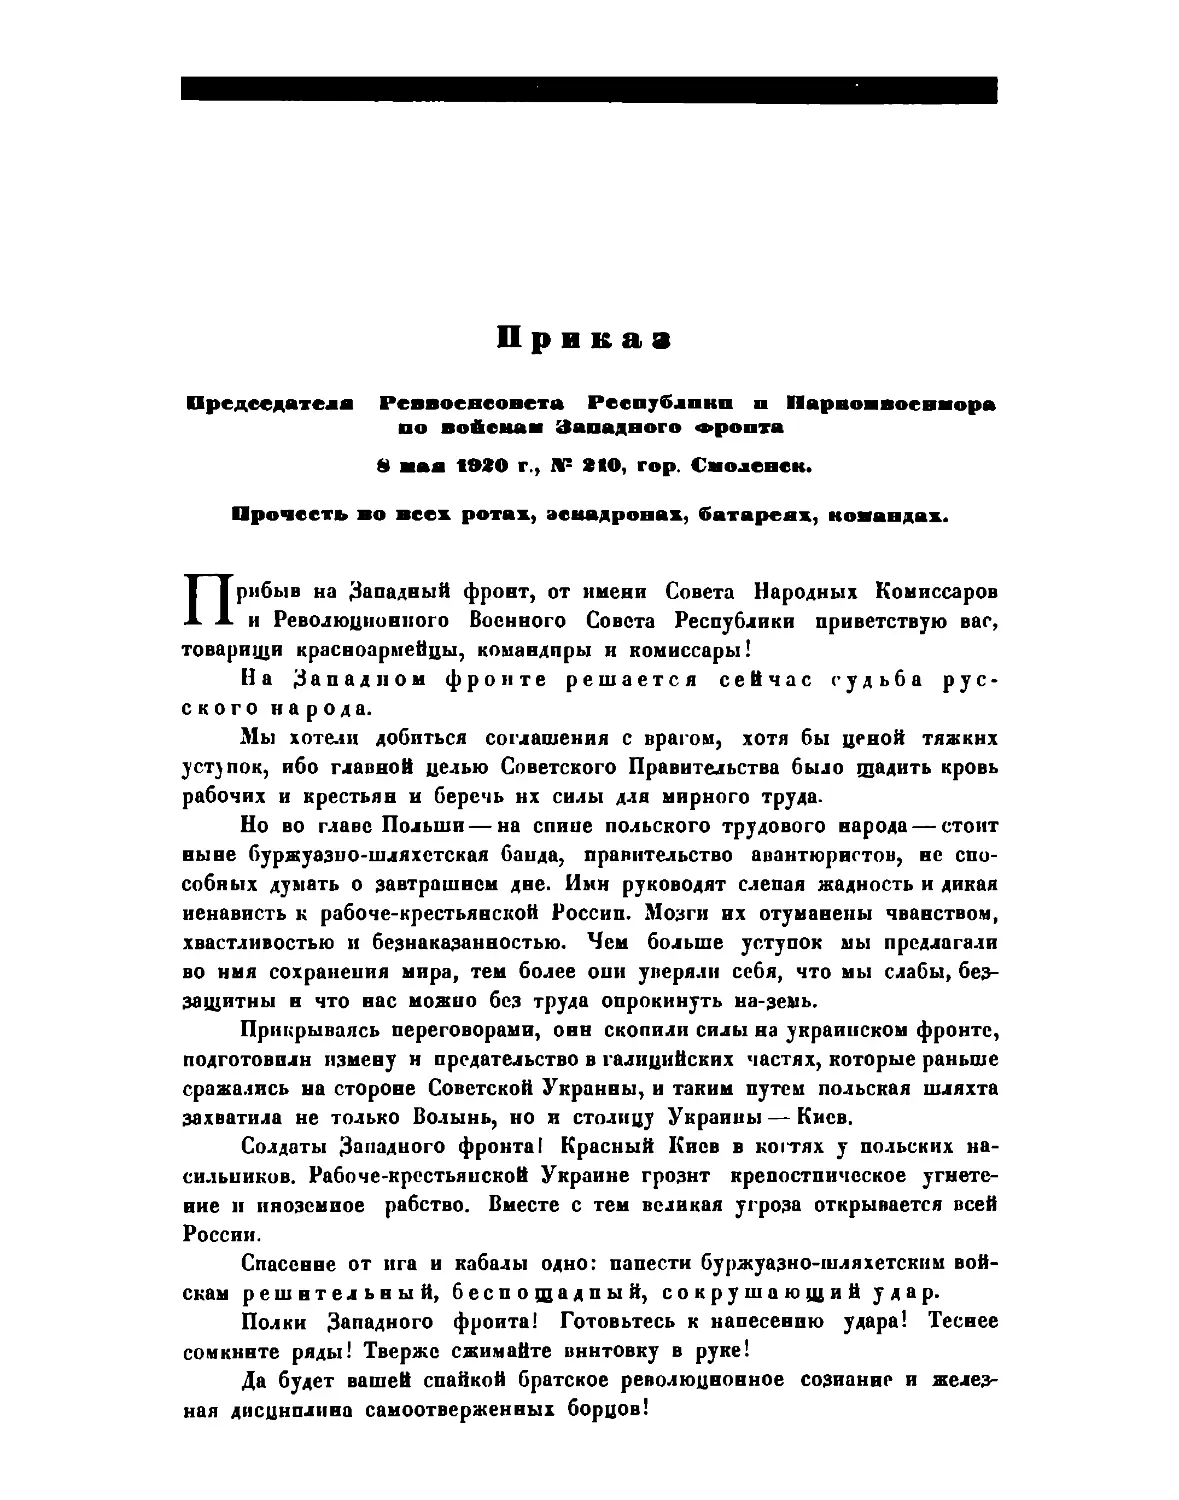 Приказ Пред. РВСР и Наркомвоенмора по войскам Западного фронта от 8 мая 1920 г. № 210, г. Смоленск